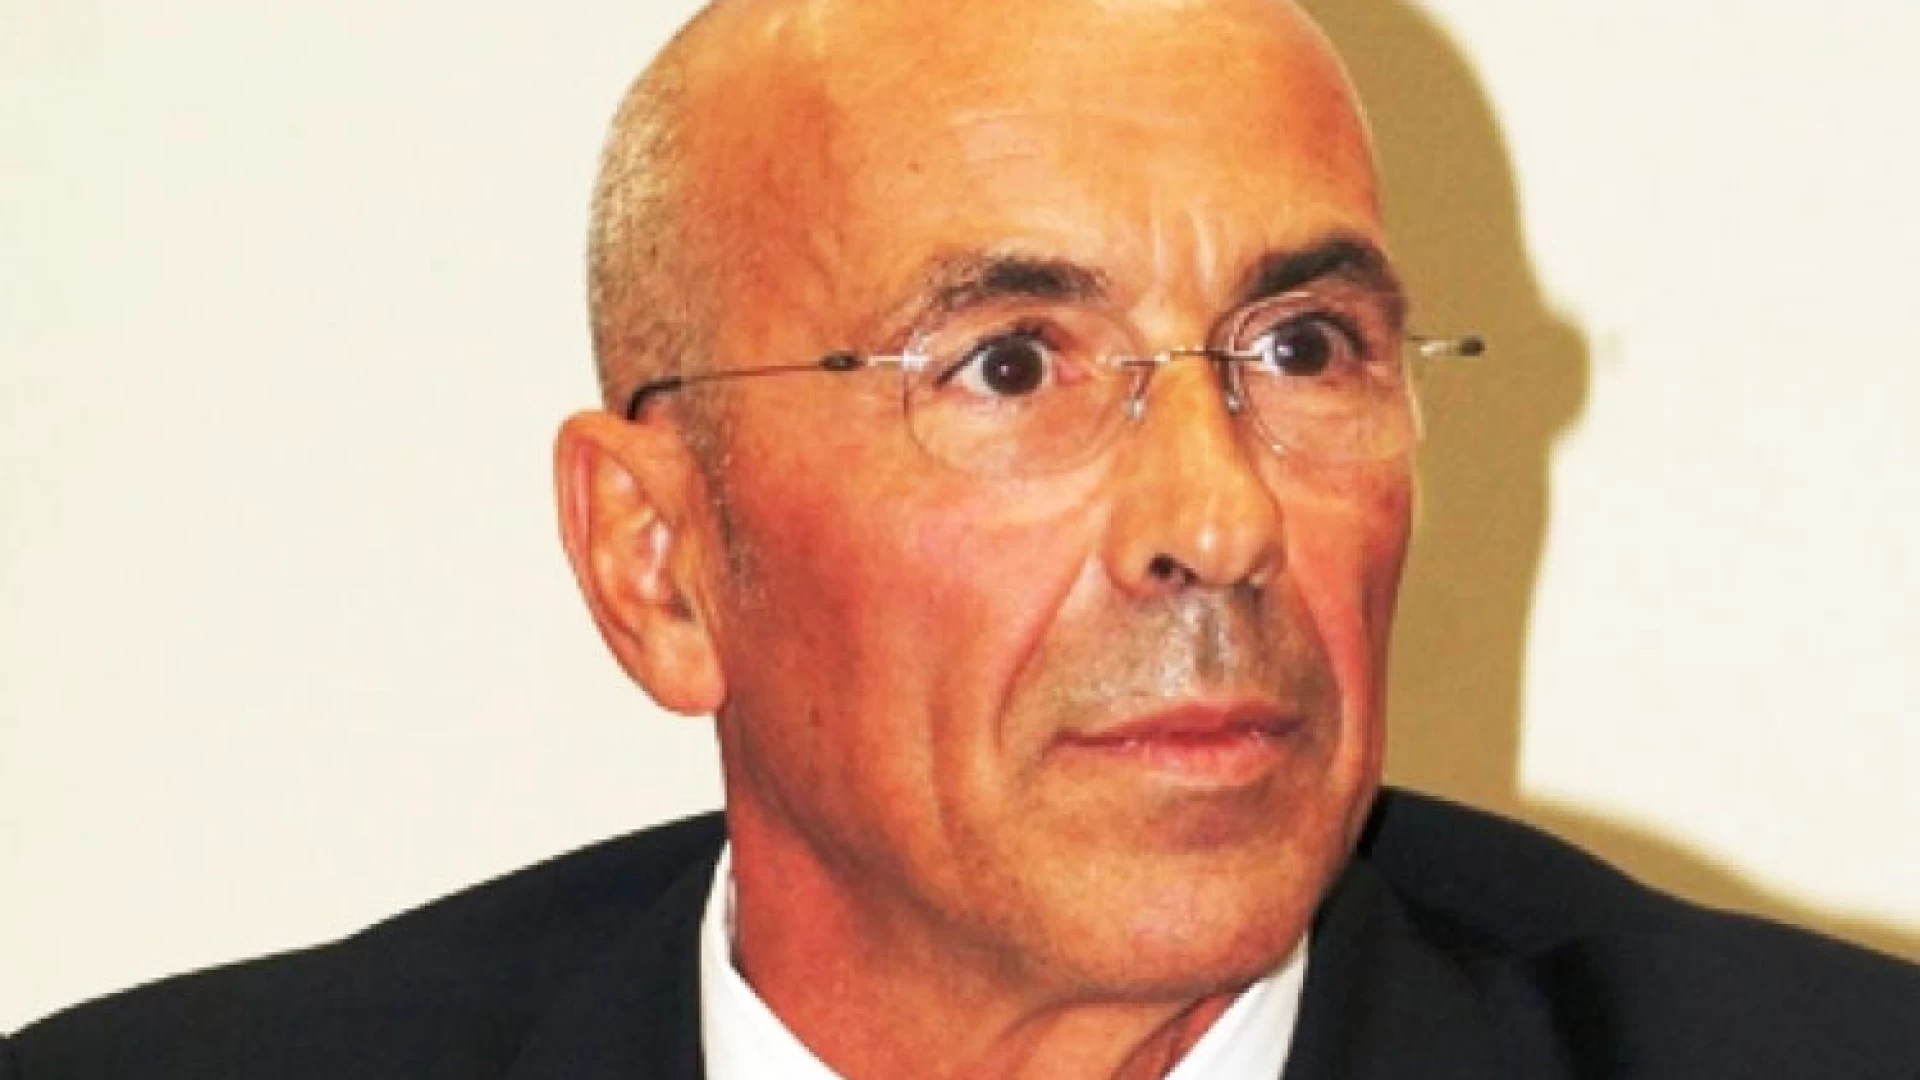 Confcommercio Molise, il presidente Spina: “Fase 2, chiediamo maggiore coinvolgimento e regole chiare”.